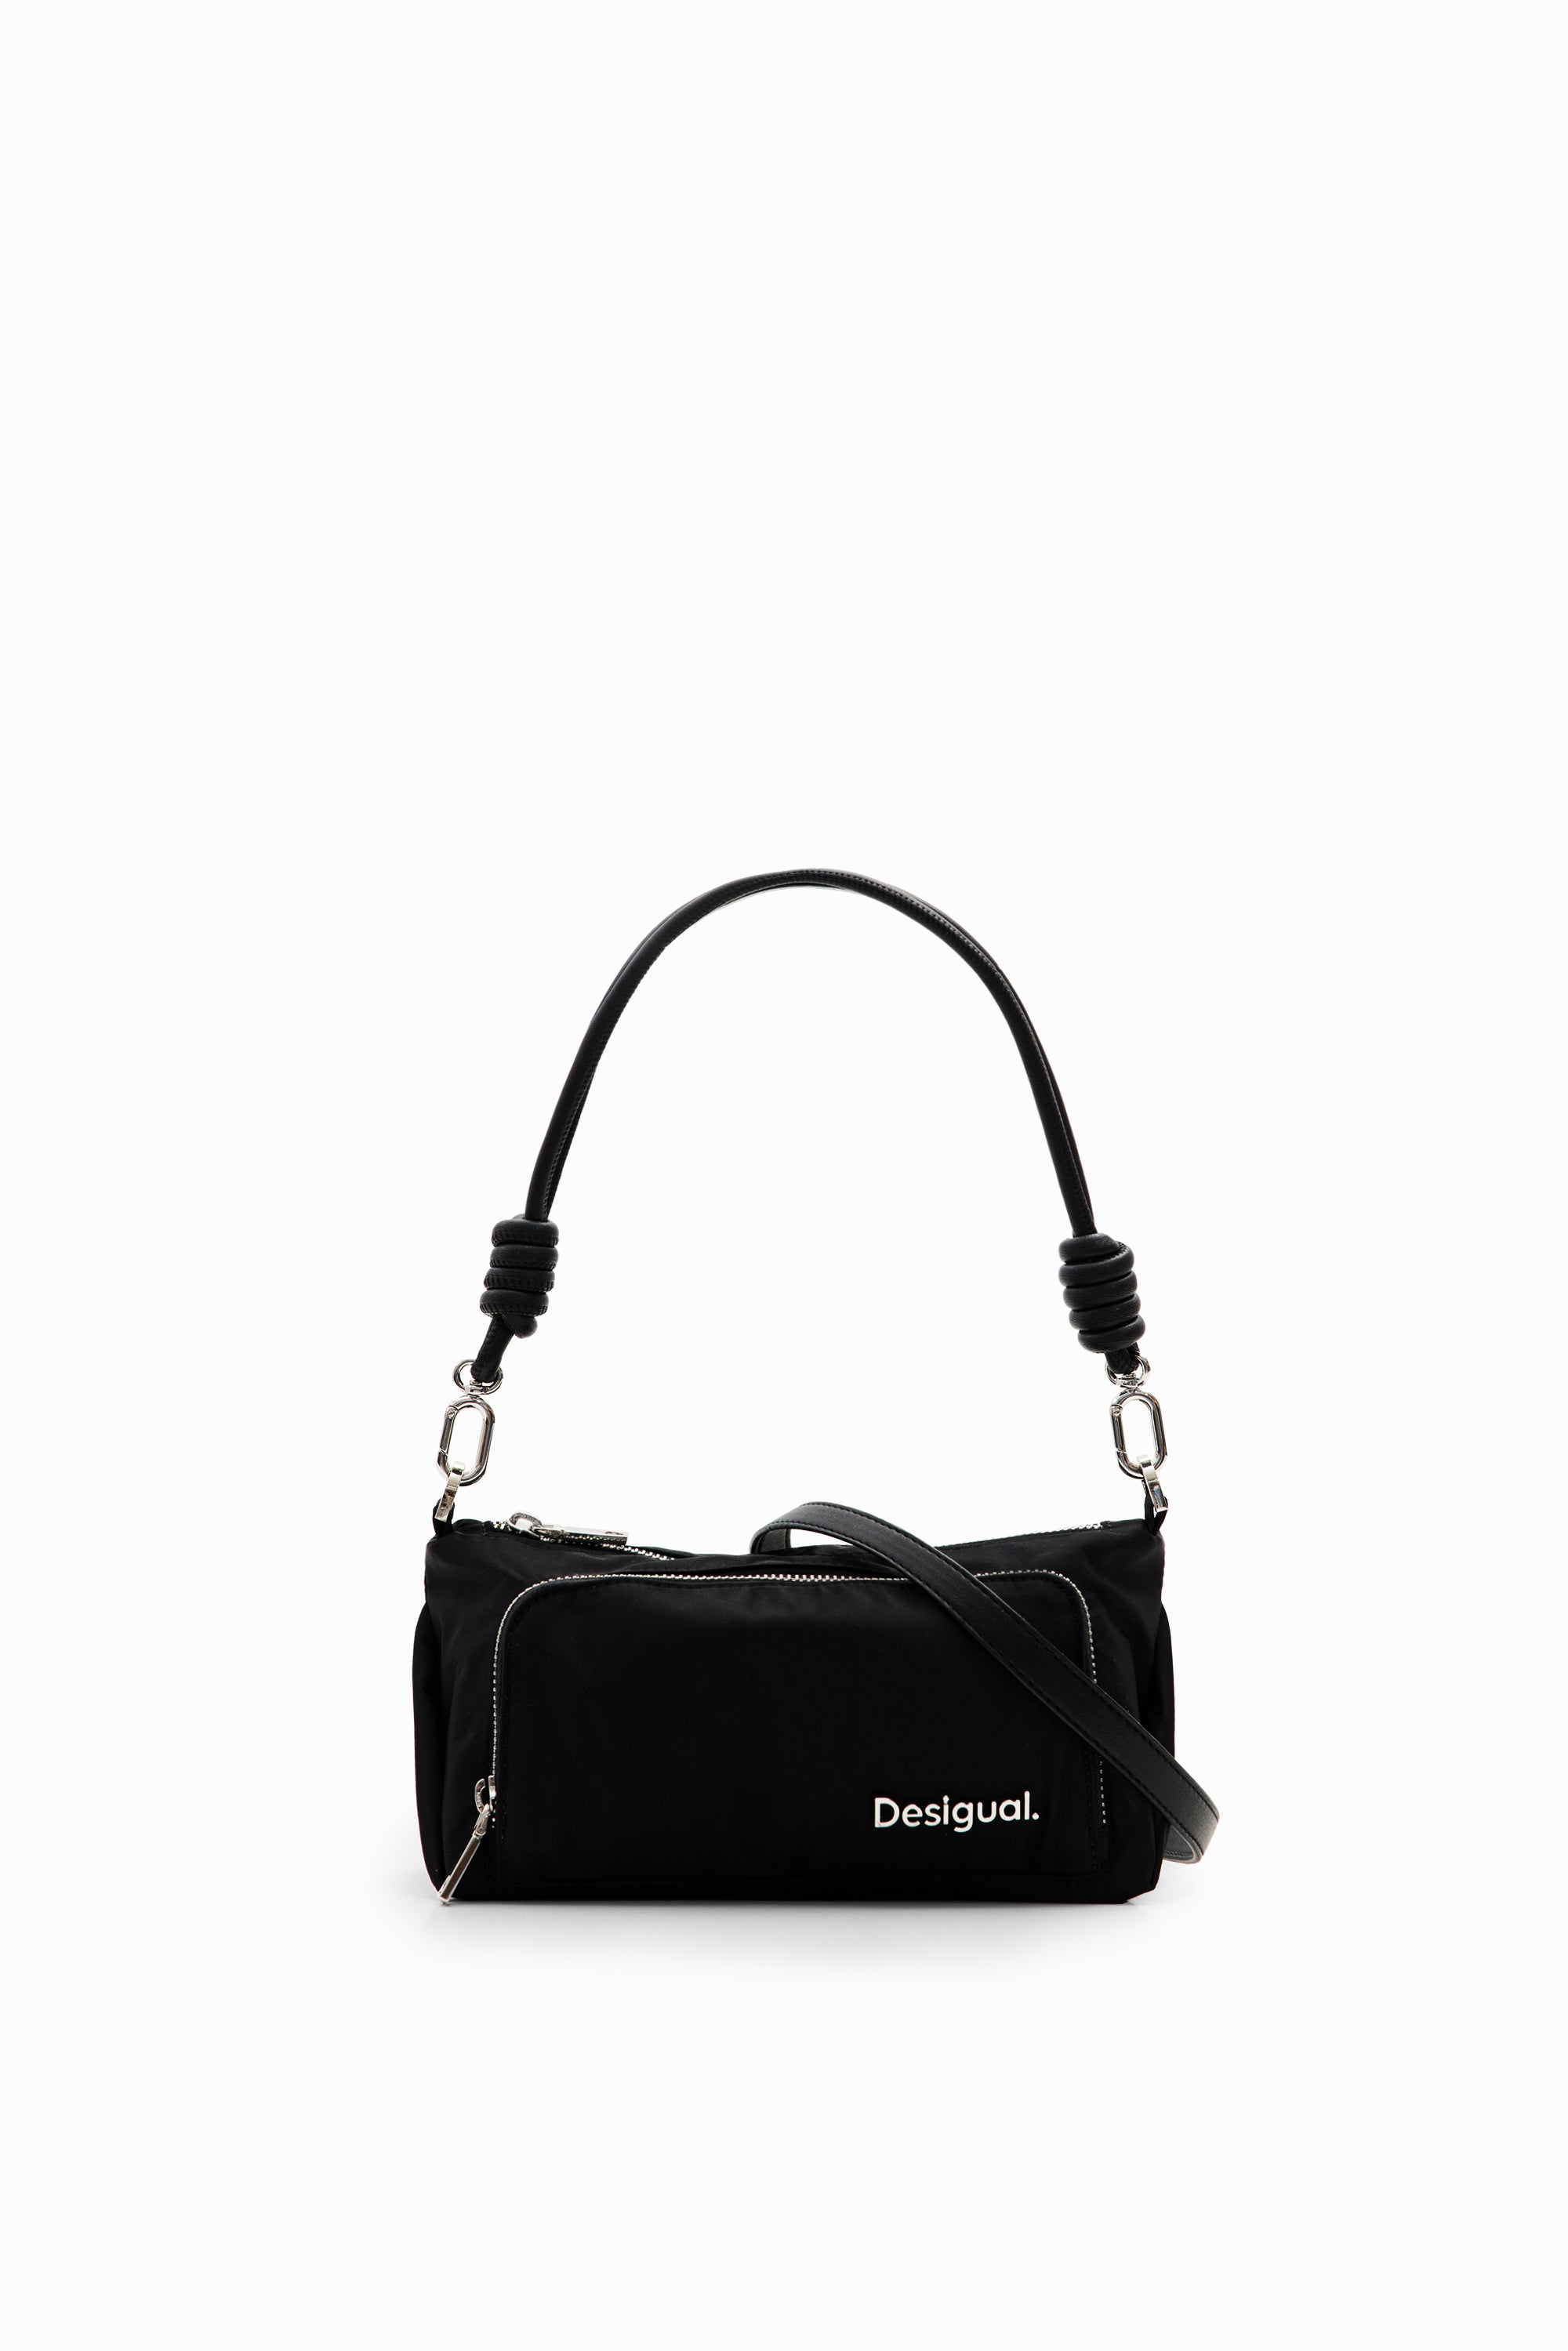 Desigual Shoulder Bag 24SAXY05 Black